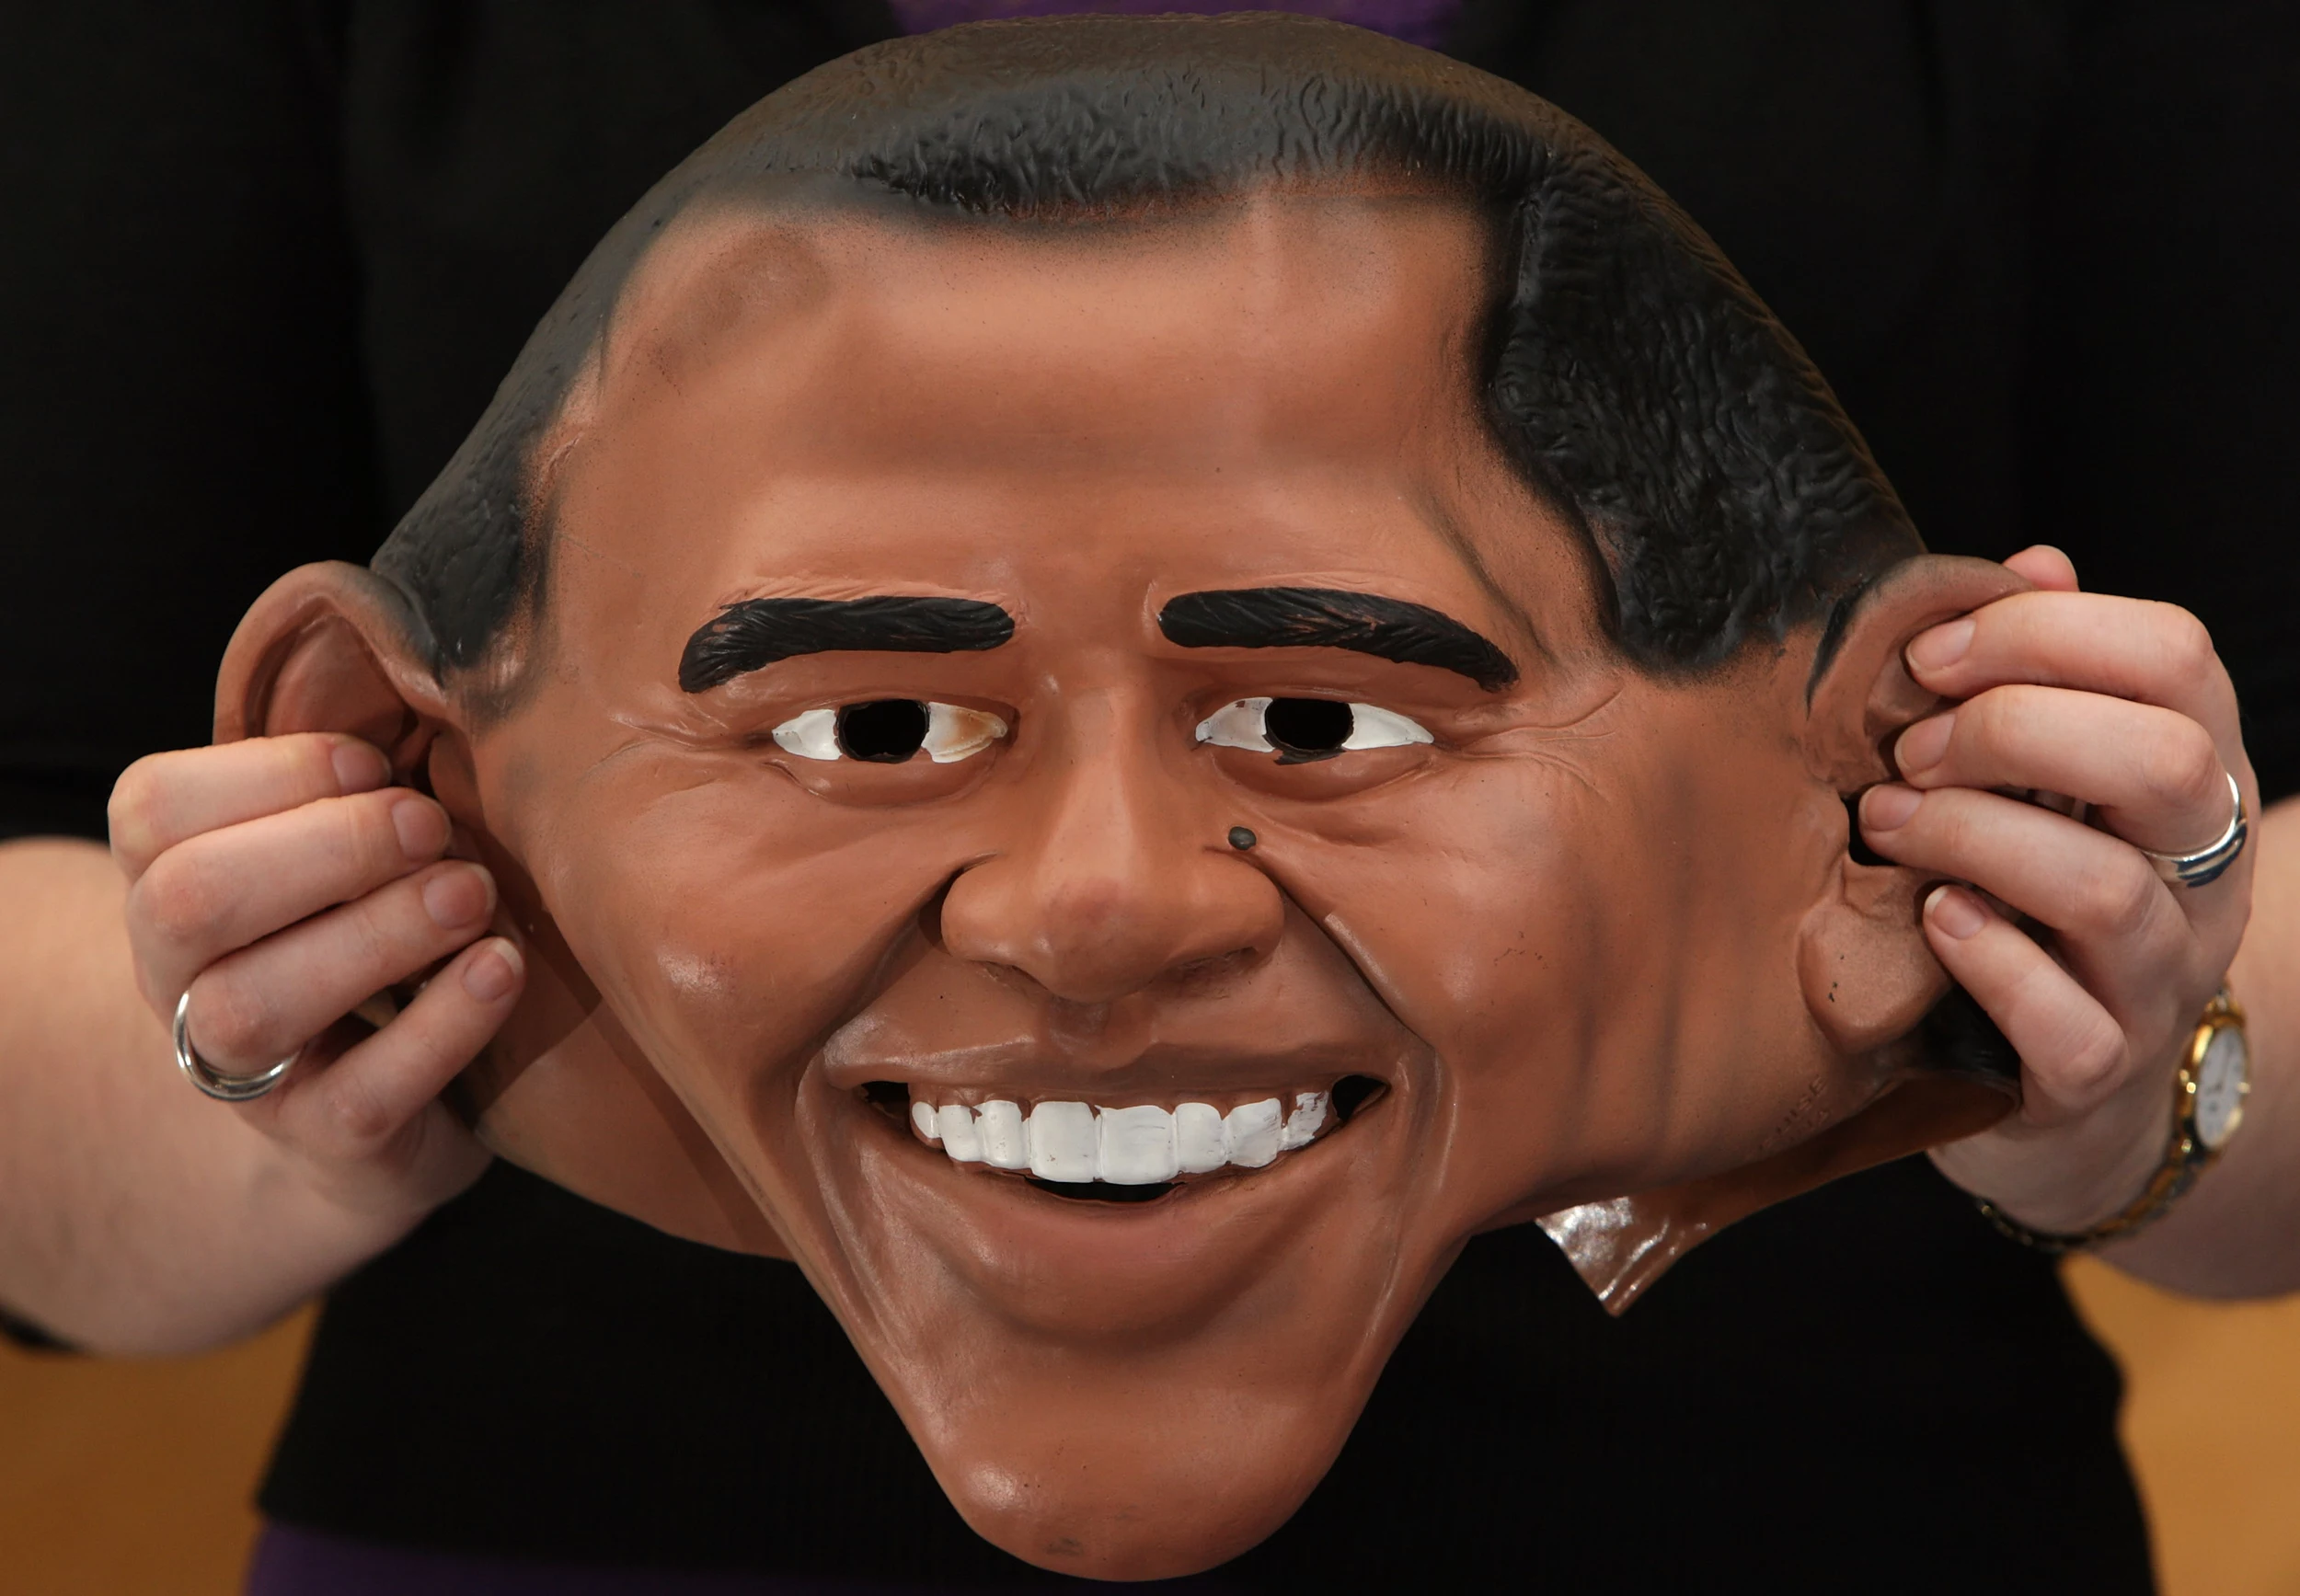 Stupid over teacher's 'racist' Obama mask